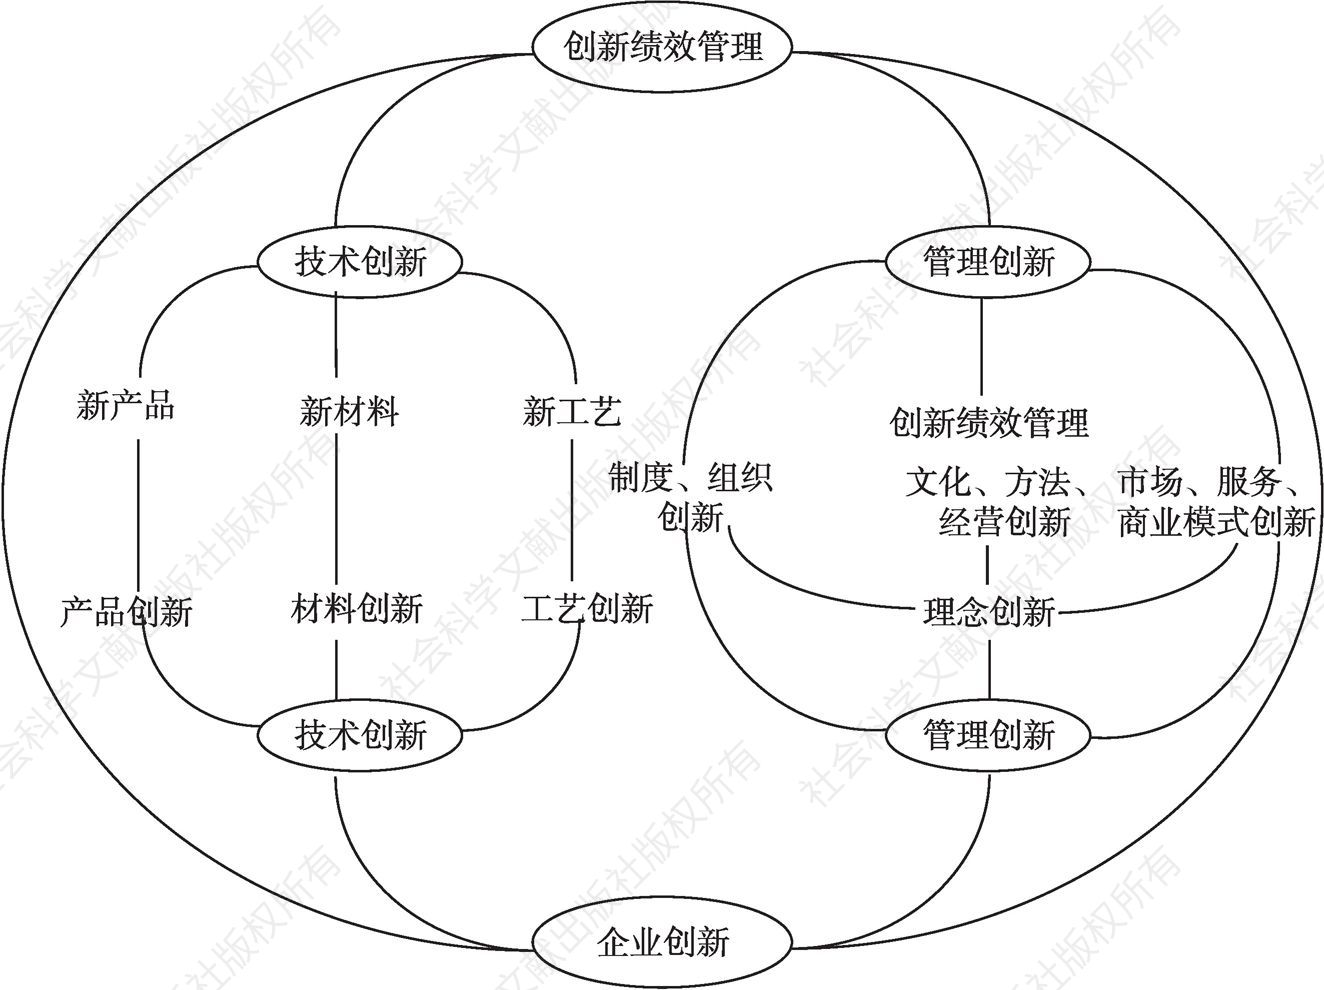 图10-4 多元管理创新生态体系